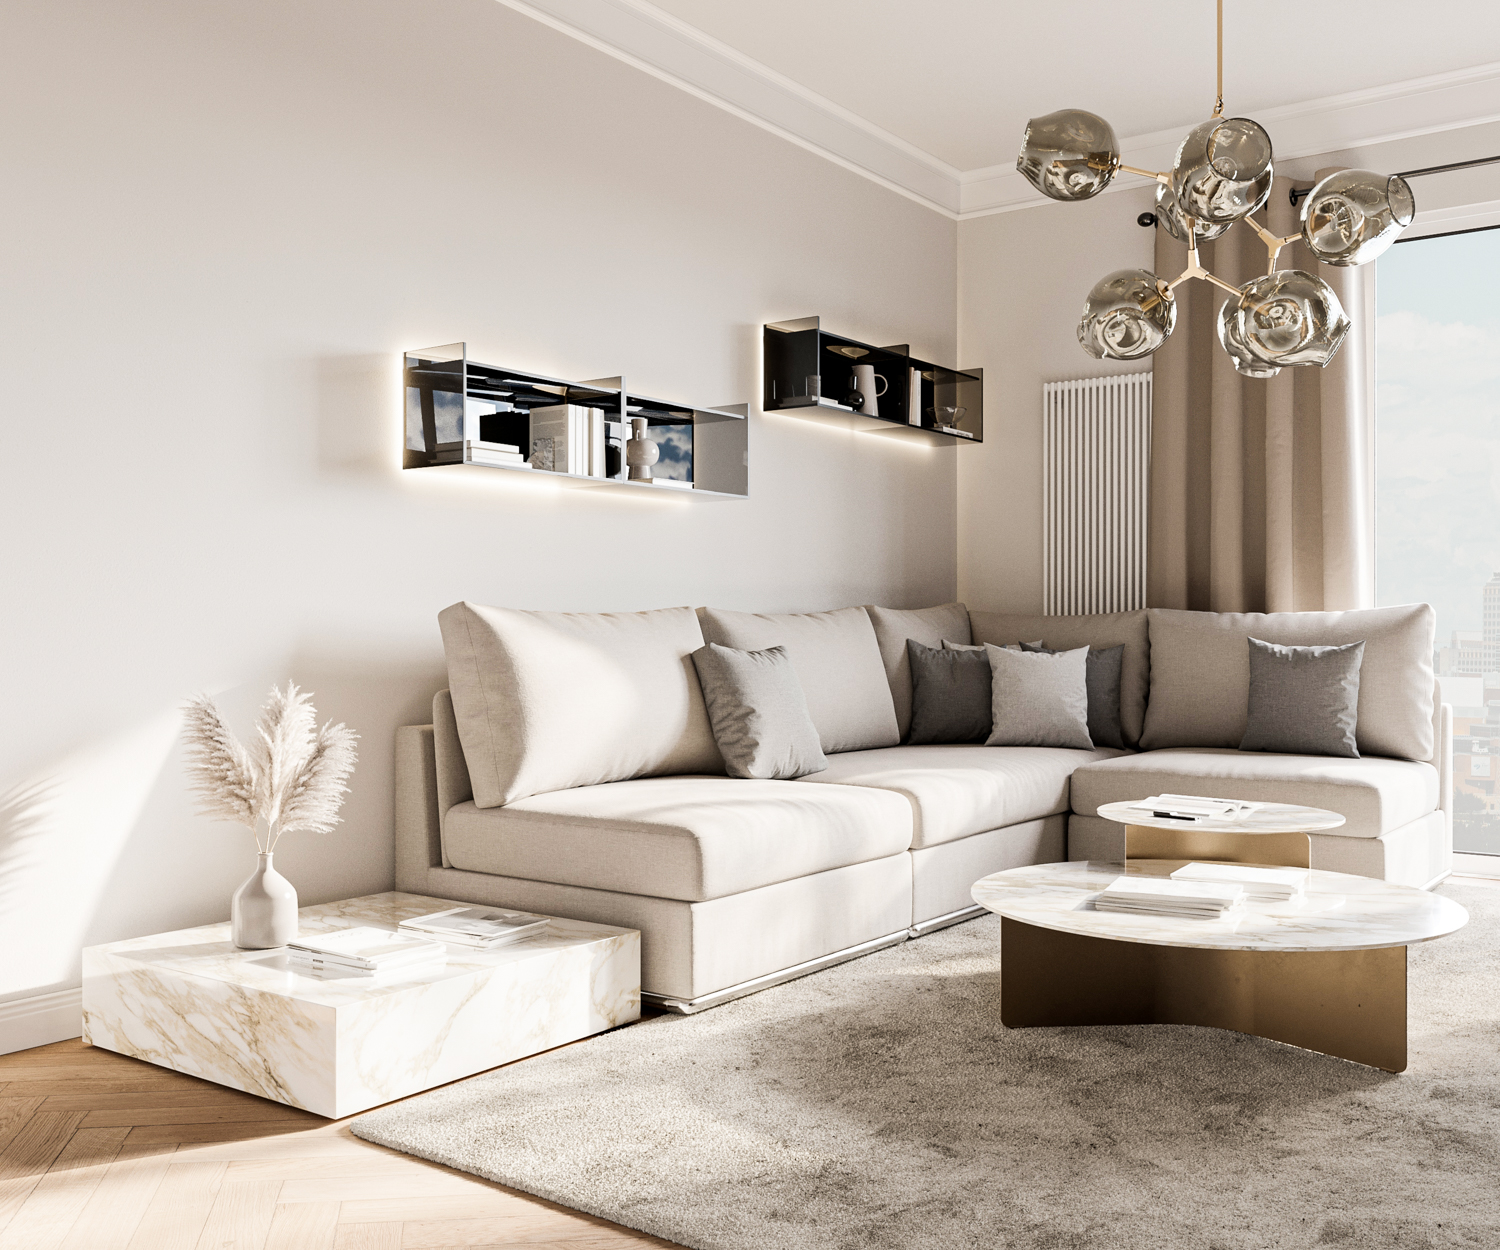 Exklusives Livitalia Design Glas Wandregal im Wohnzimmer über Couch